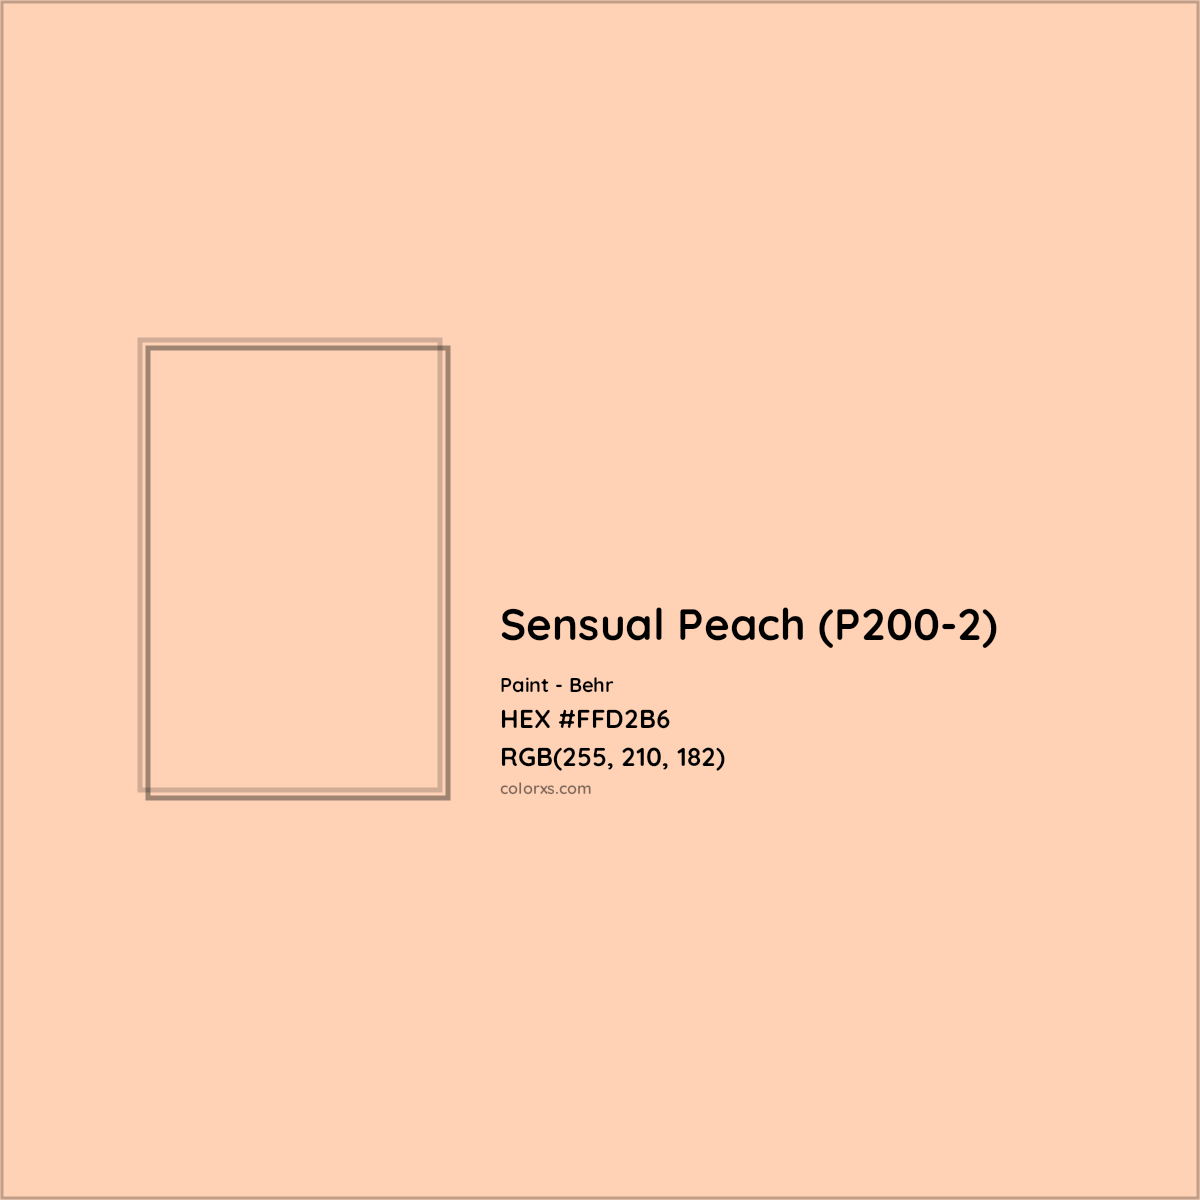 HEX #FFD2B6 Sensual Peach (P200-2) Paint Behr - Color Code